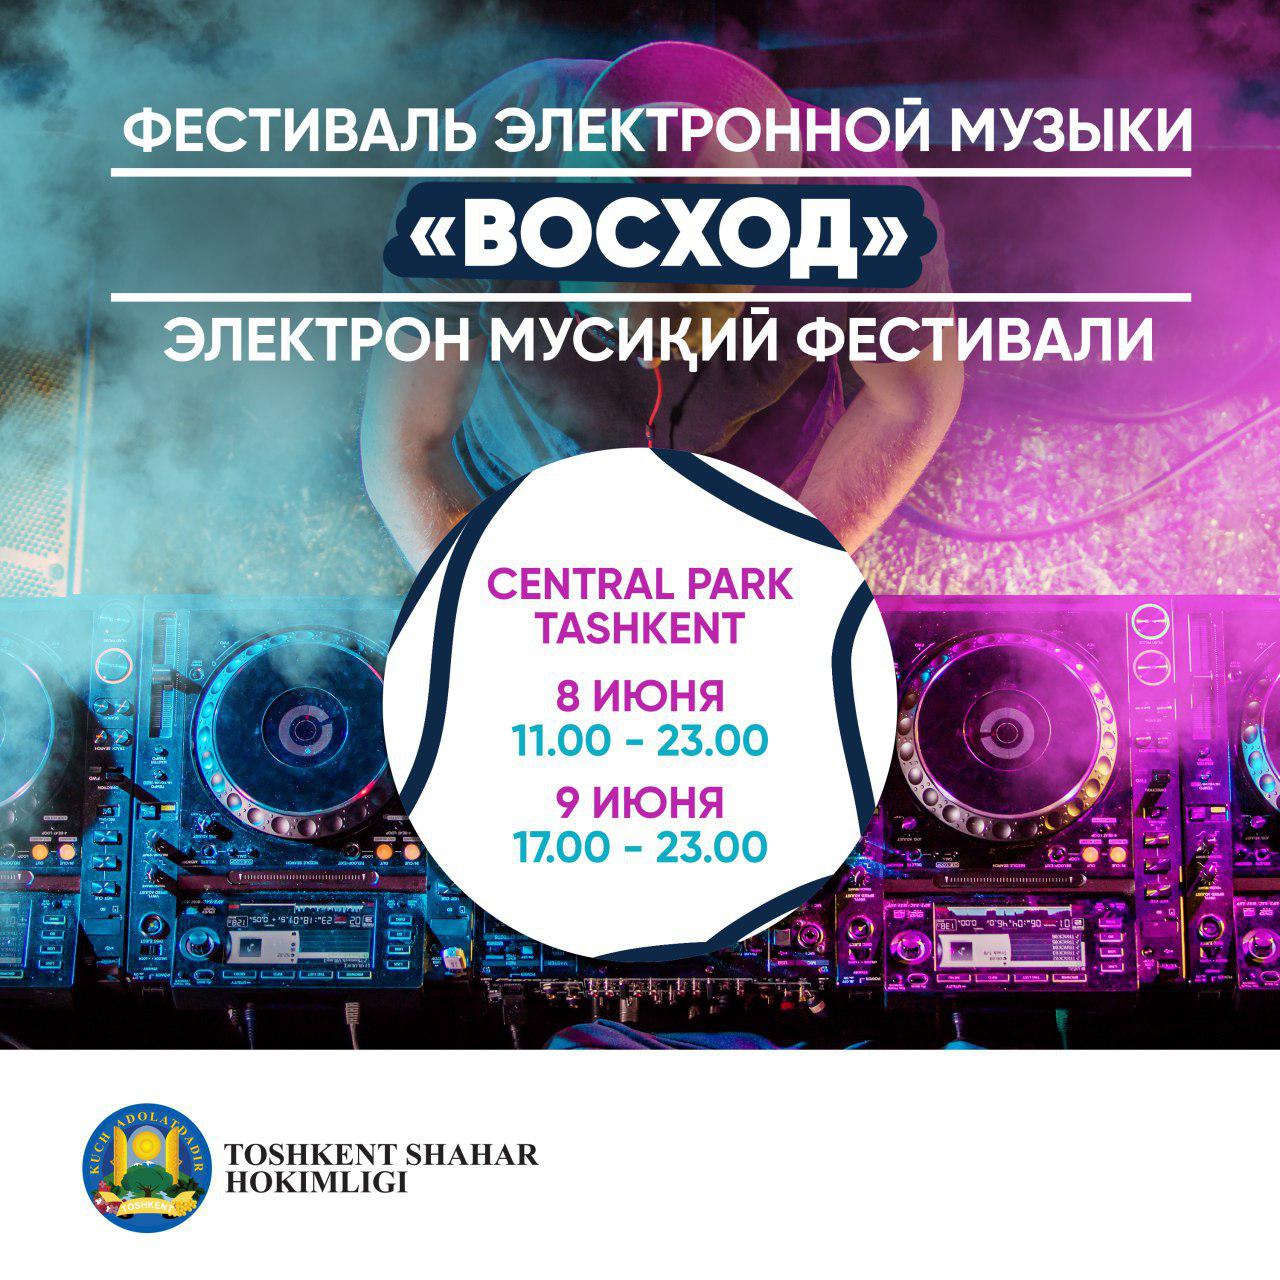 В Ташкентском Central Park состоится двухдневный фестиваль электронной музыки